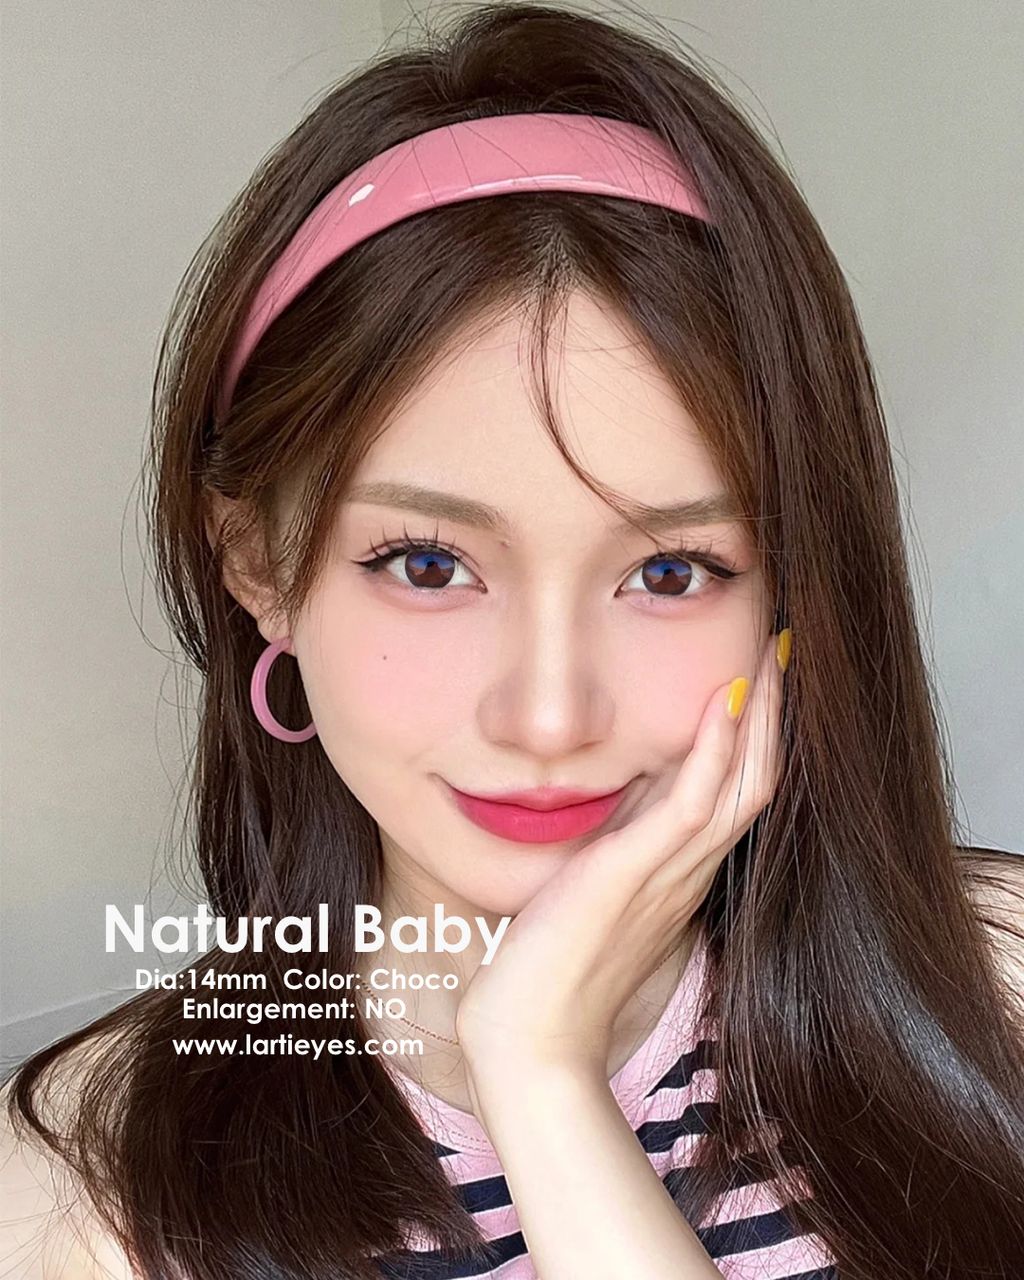 Natural Baby Choco model 4